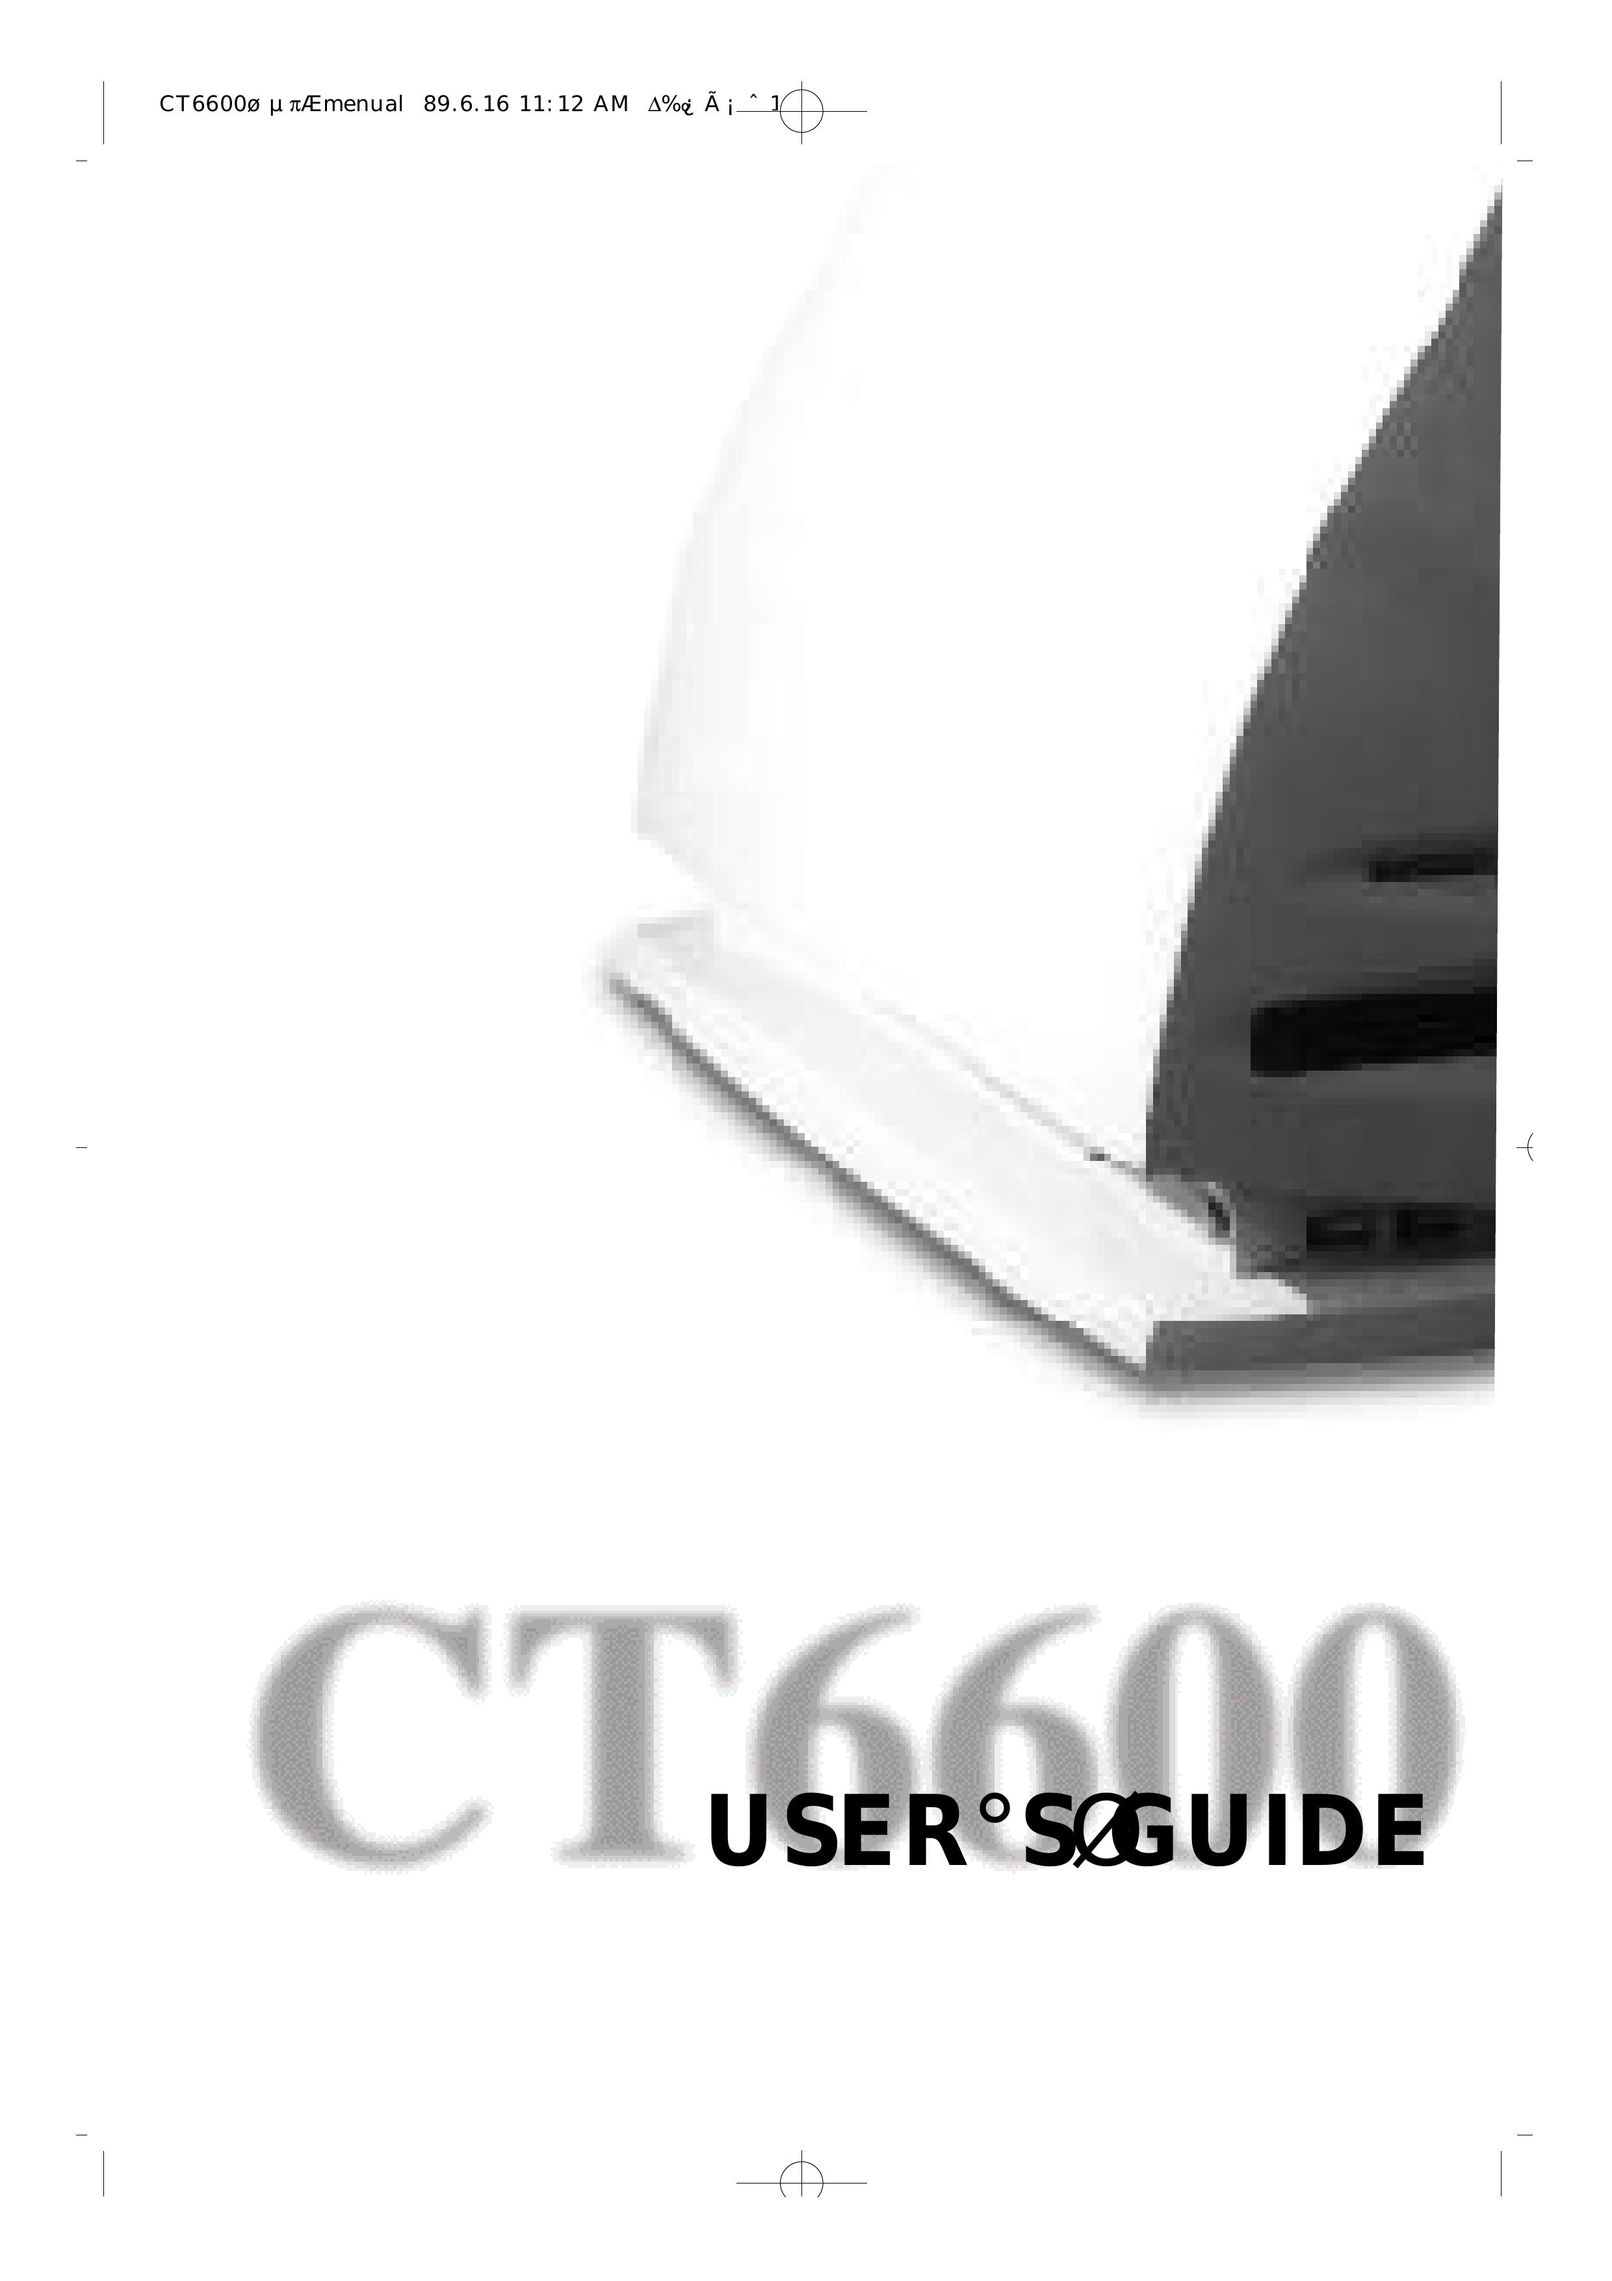 Daewoo CT6600 Personal Computer User Manual